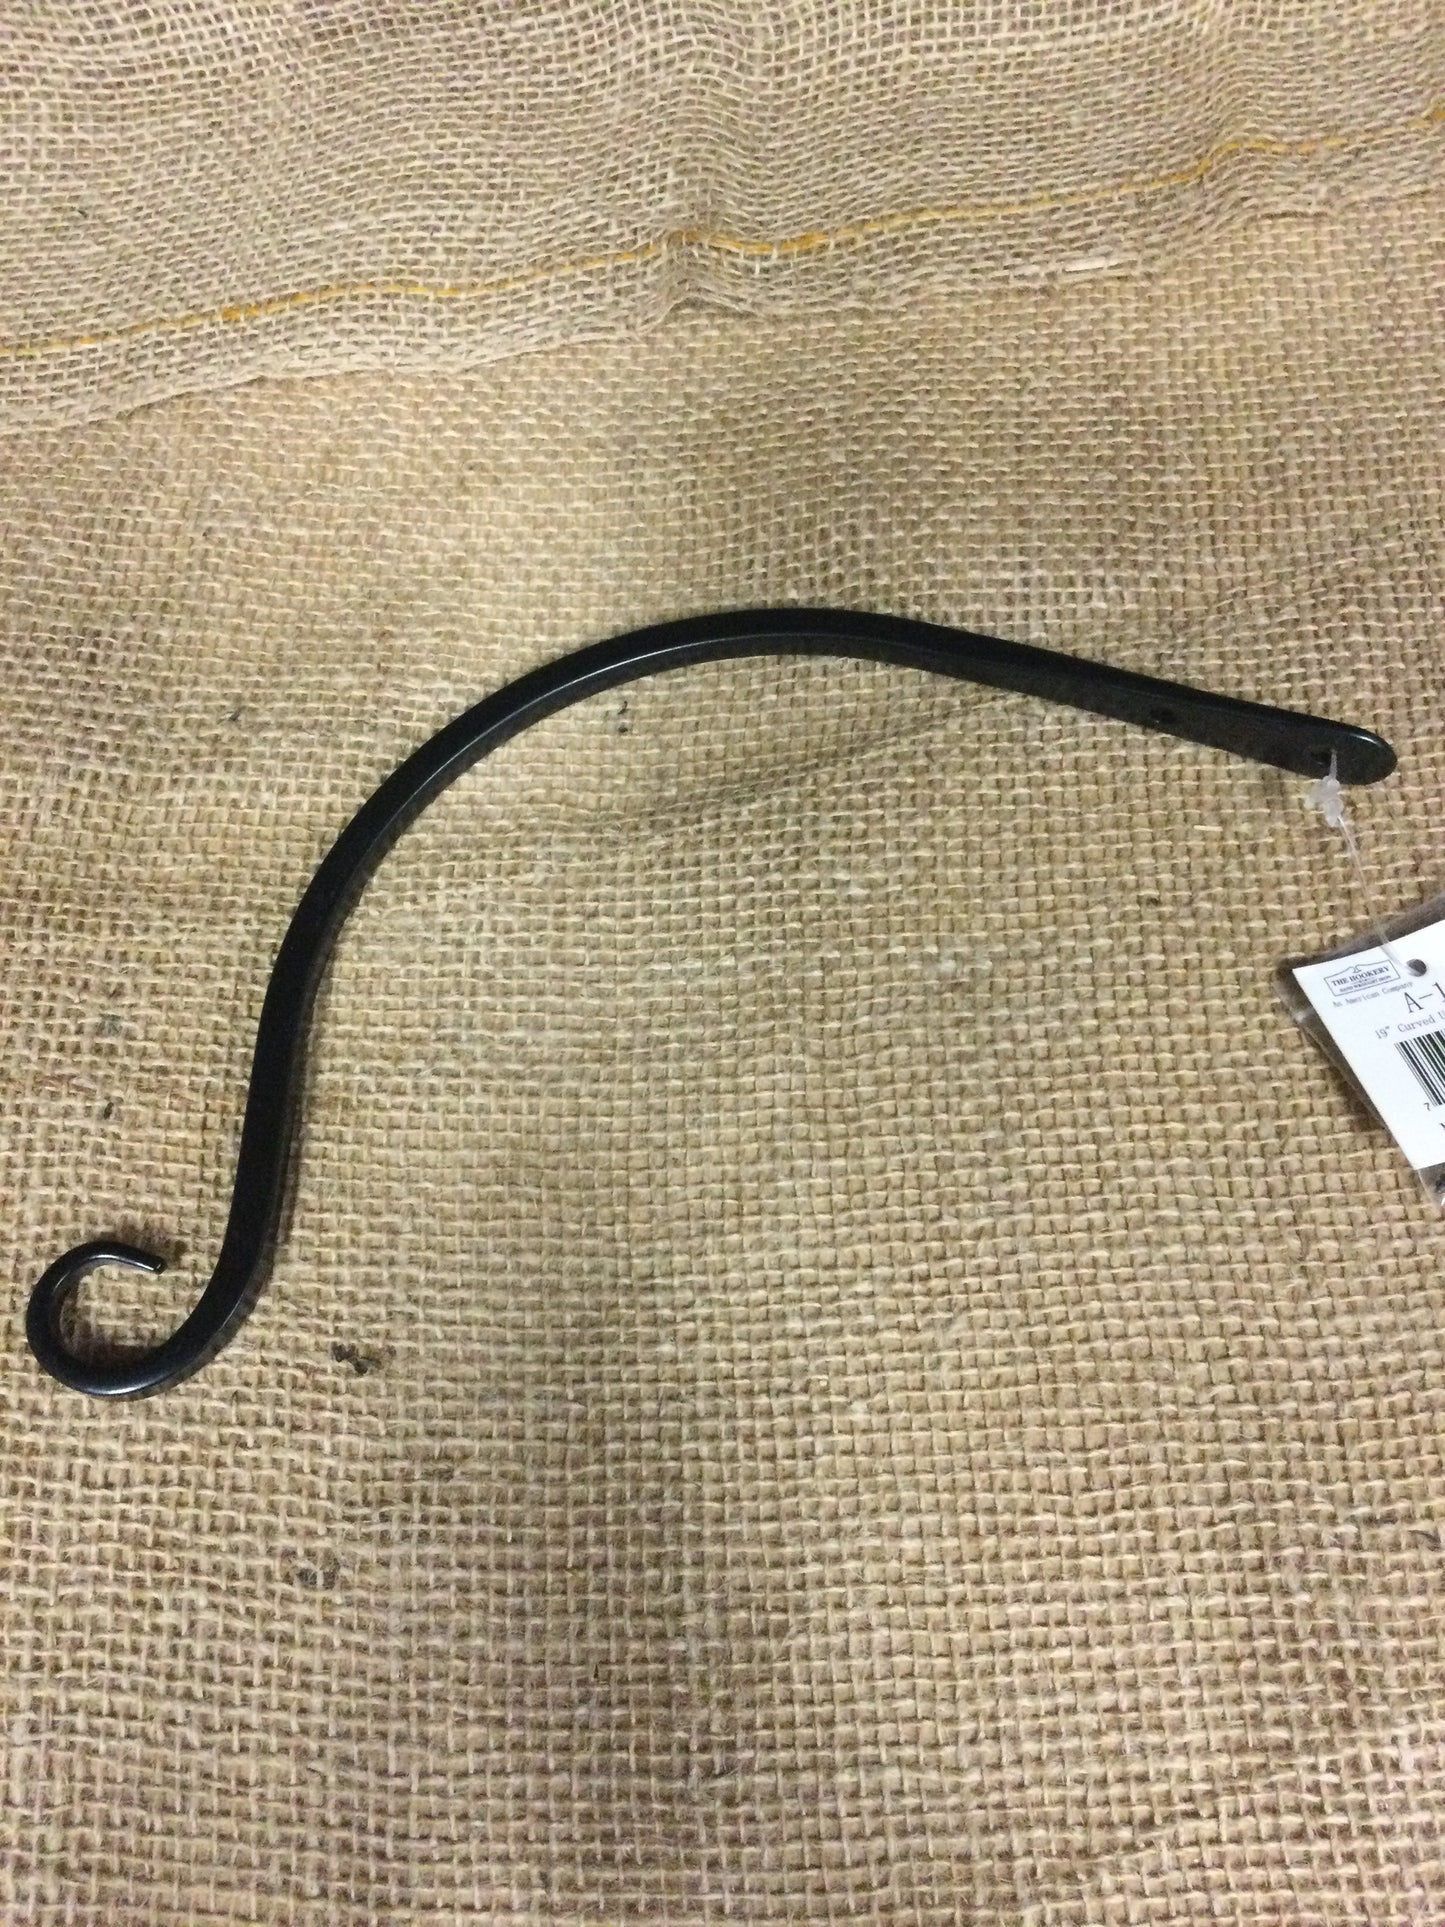 9" curved upturn hook